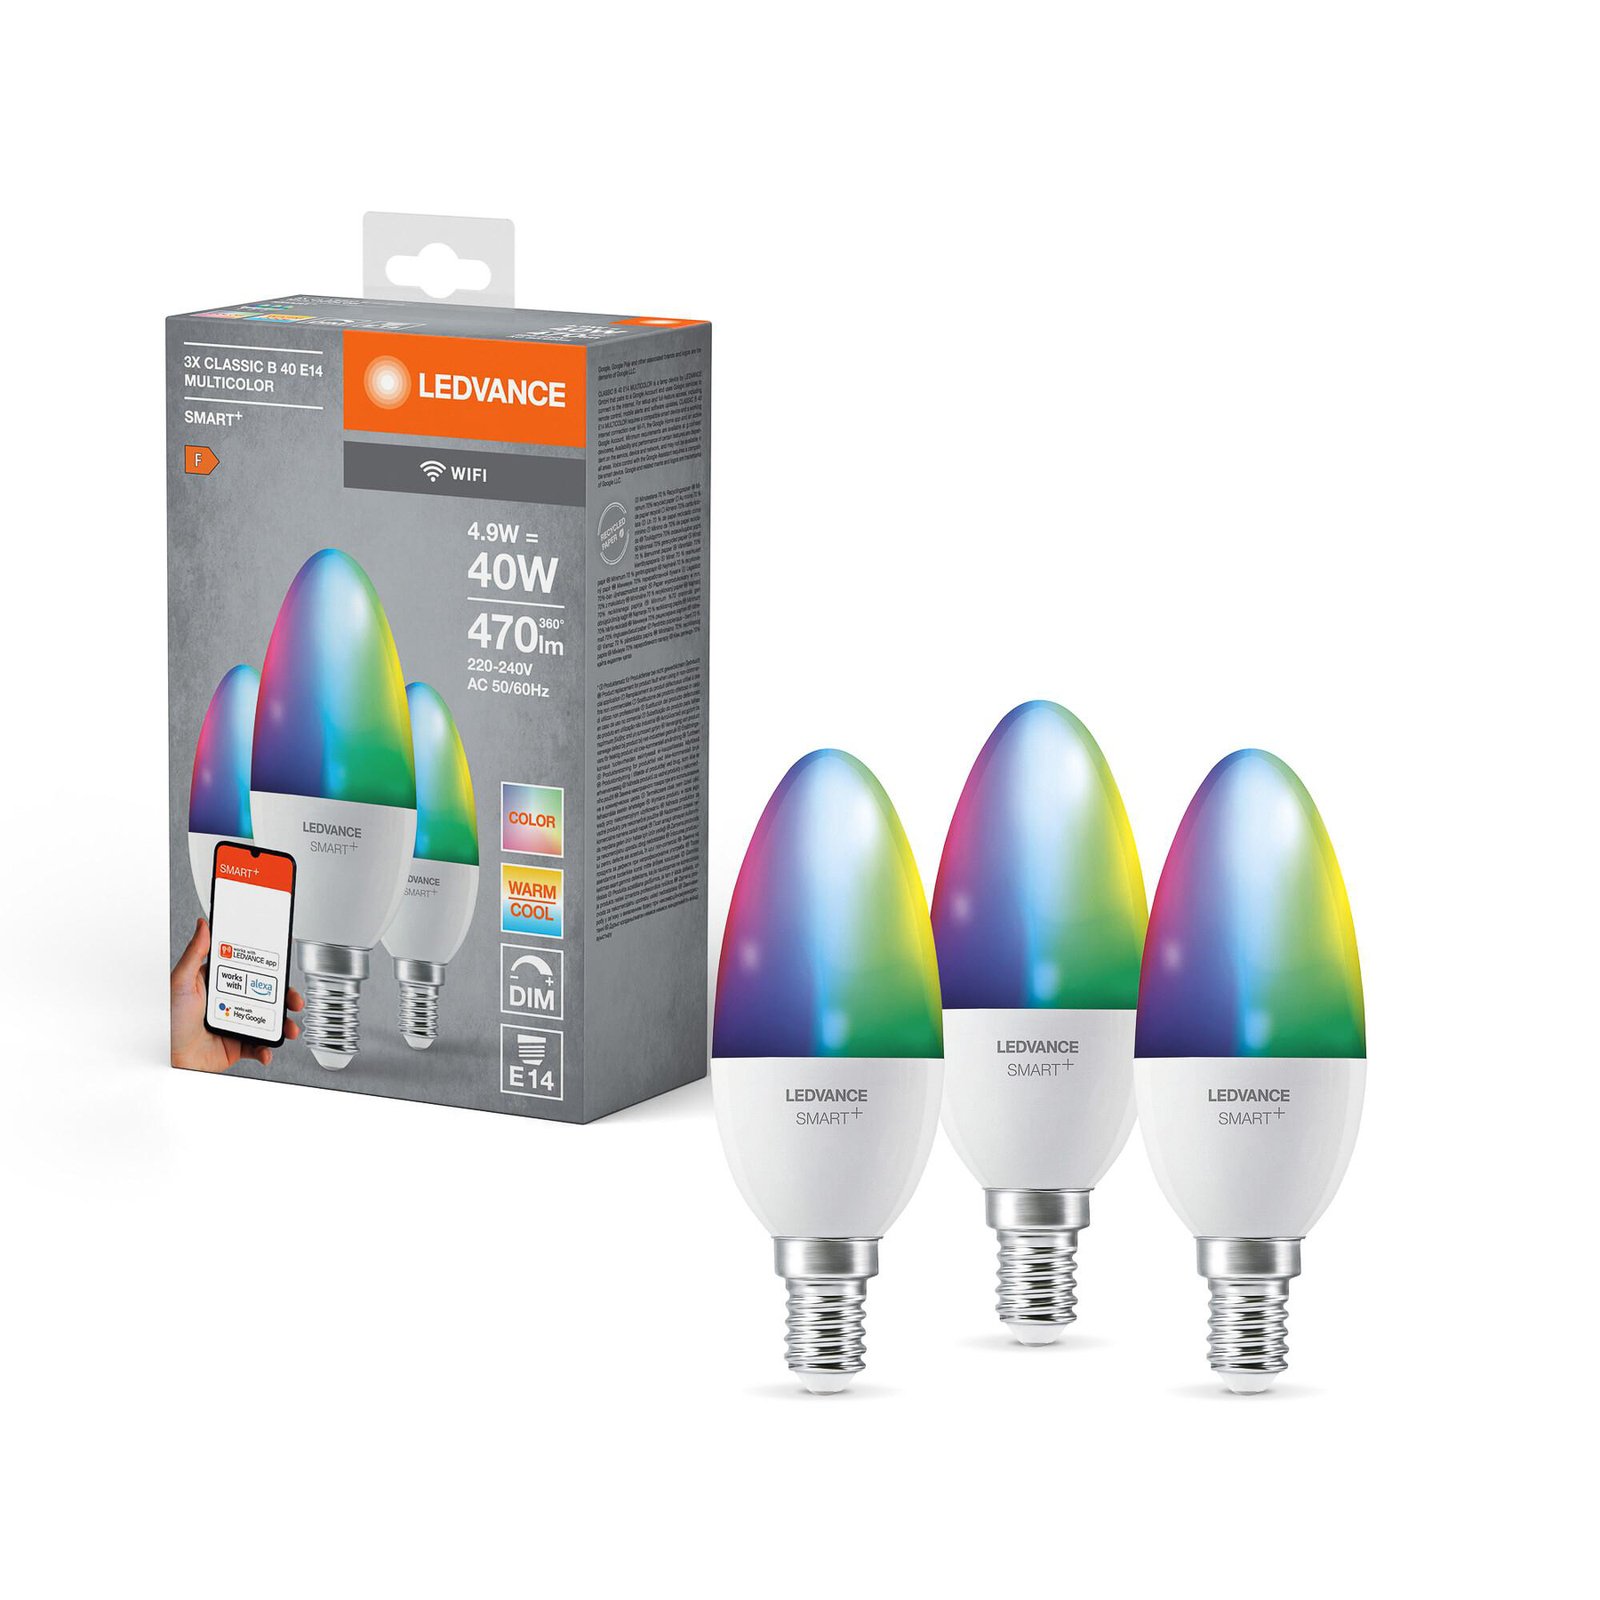 LEDVANCE SMART+ LED, kynttilä, E14, 4.9 W, CCT, RGB, WiFi, 3 kpl